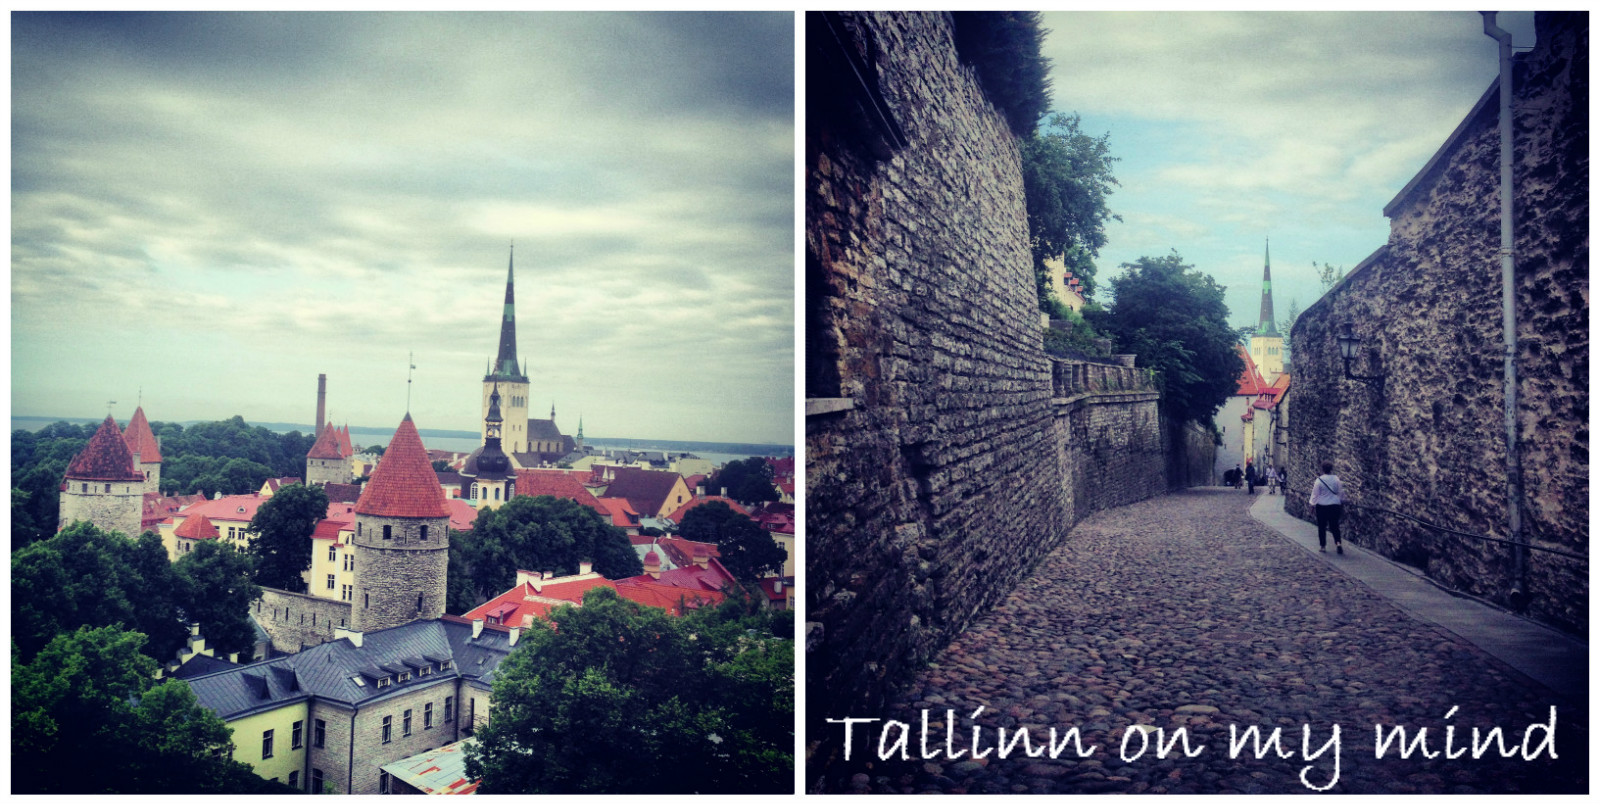 tallinn old town